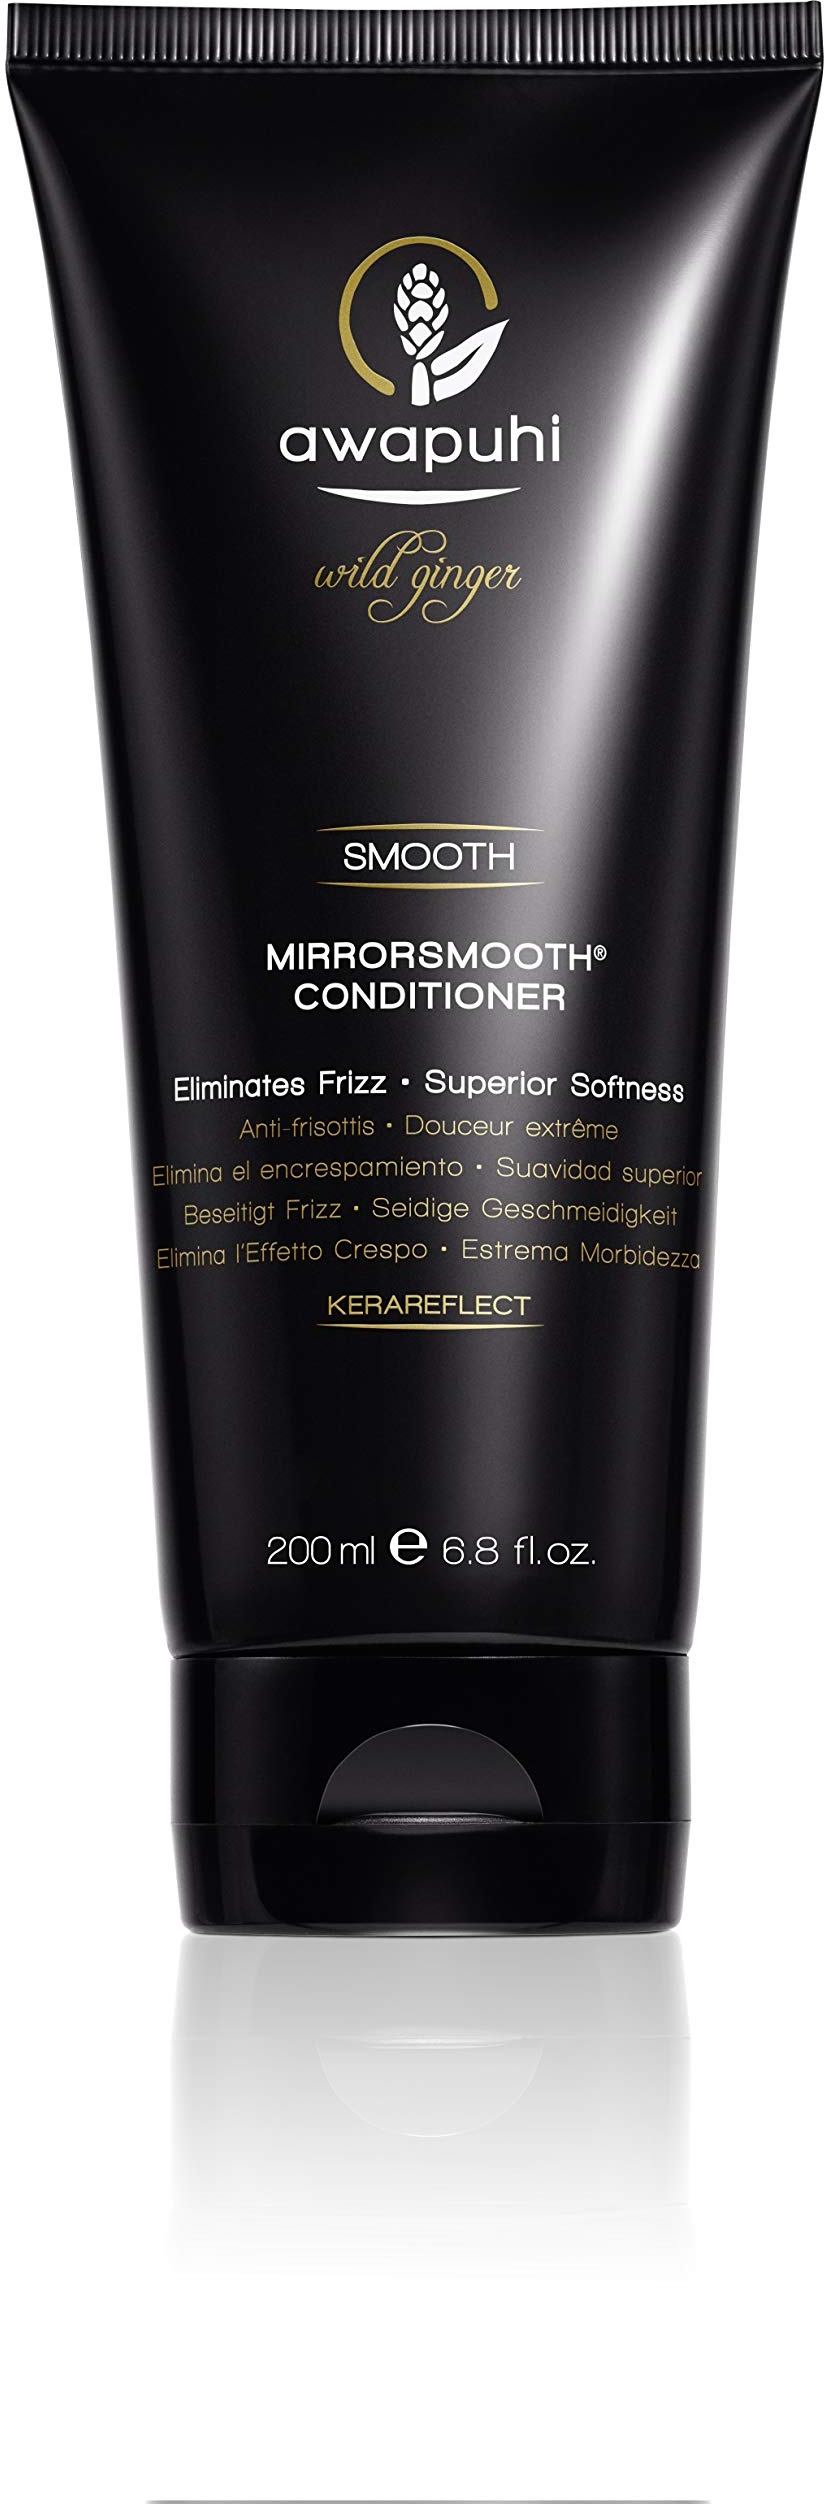 Paul Mitchell Awapuhi Wild Ginger MirrorSmooth Conditioner - Feuchtigkeits-Conditioner für trockenes, widerspenstiges Haar, Haarpflege für mehr Glanz, 200 ml